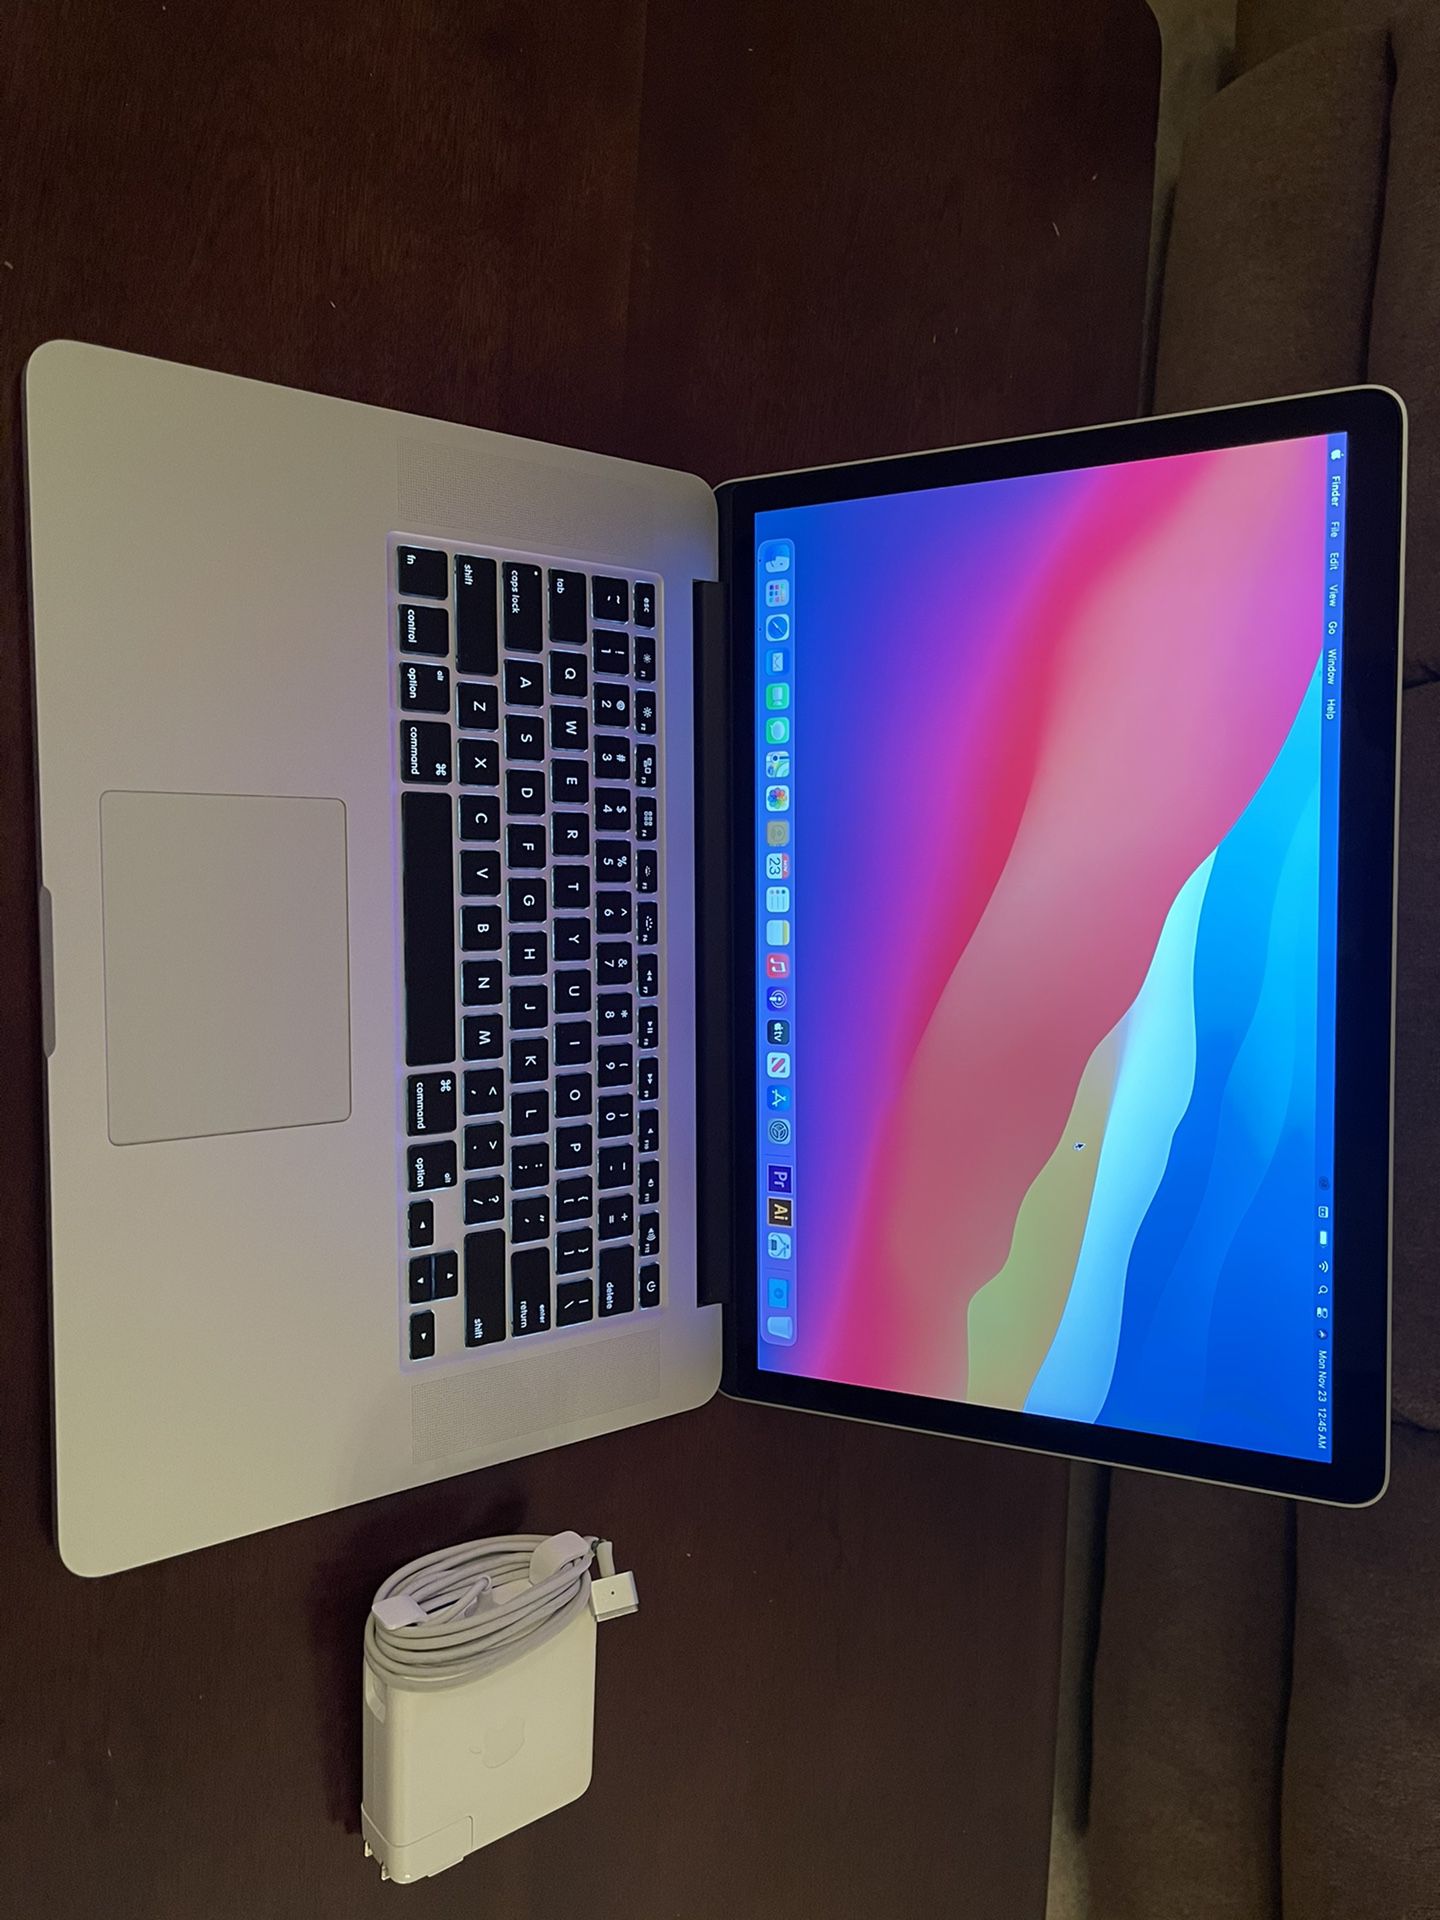 Mid 2015 MacBook Pro 15.4”, quad core i7, 16gb ram, 512gb ram, dual graphics, Big Sur MacOs